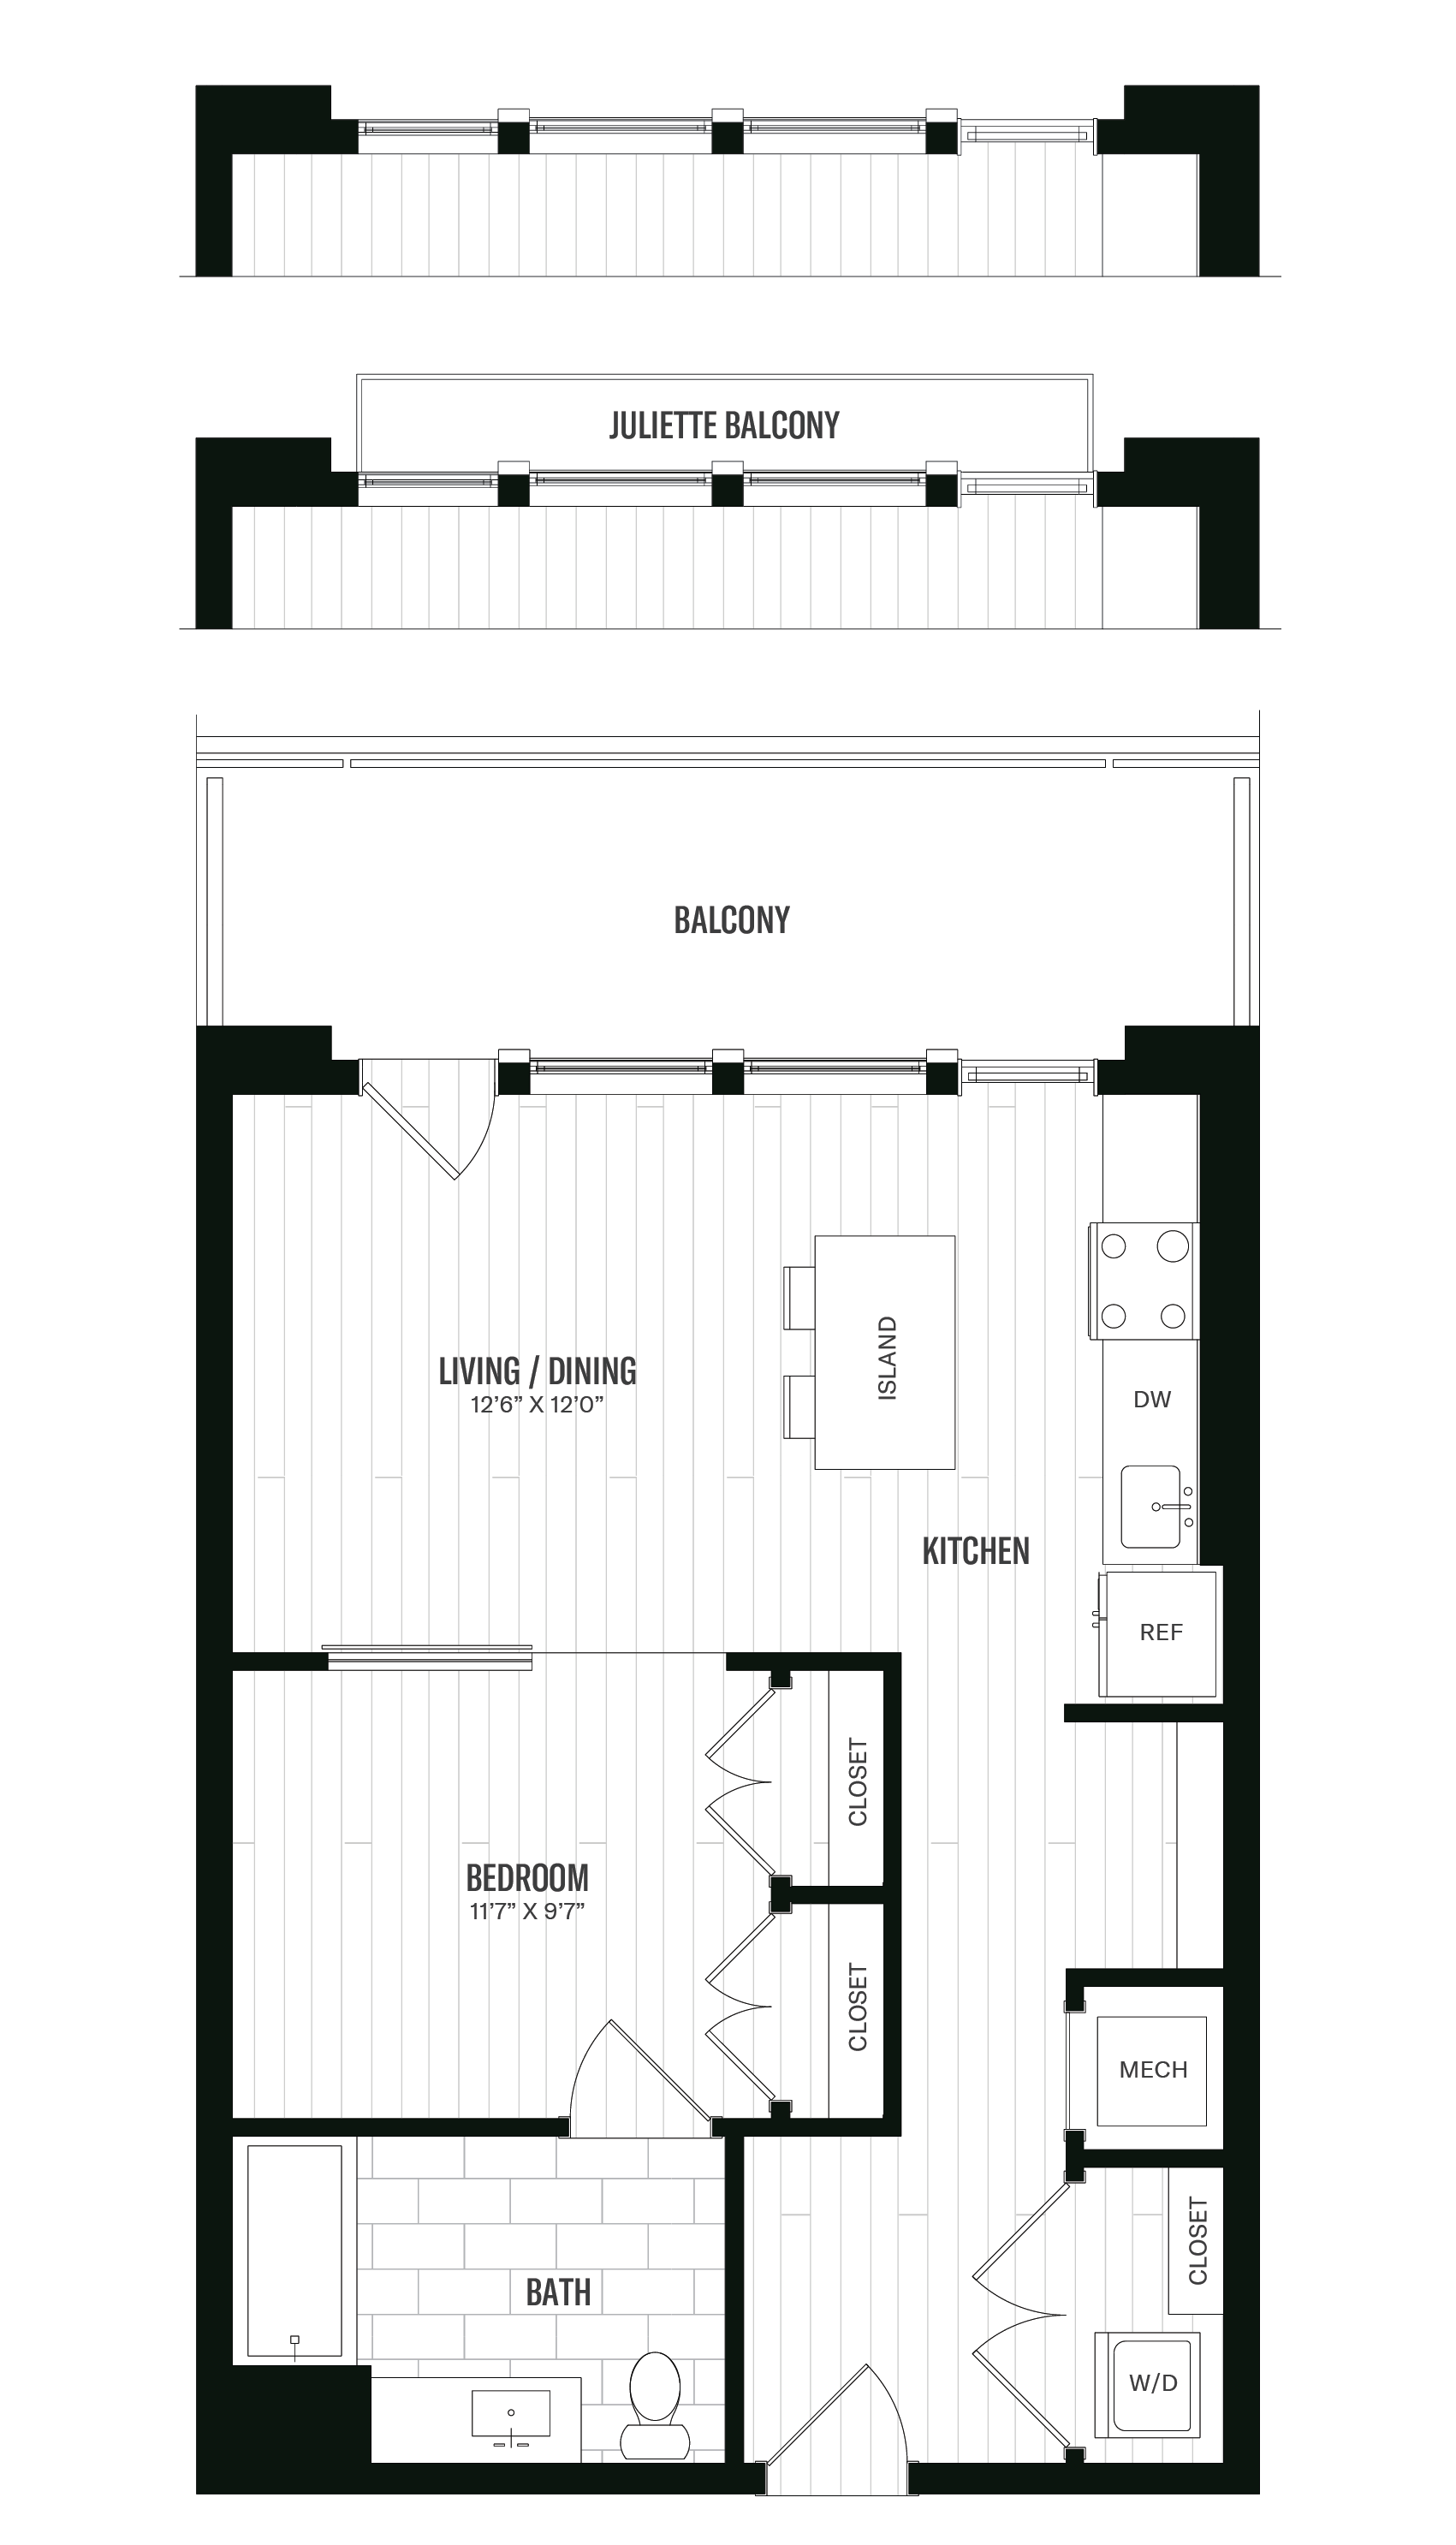 Floorplan image of unit 518